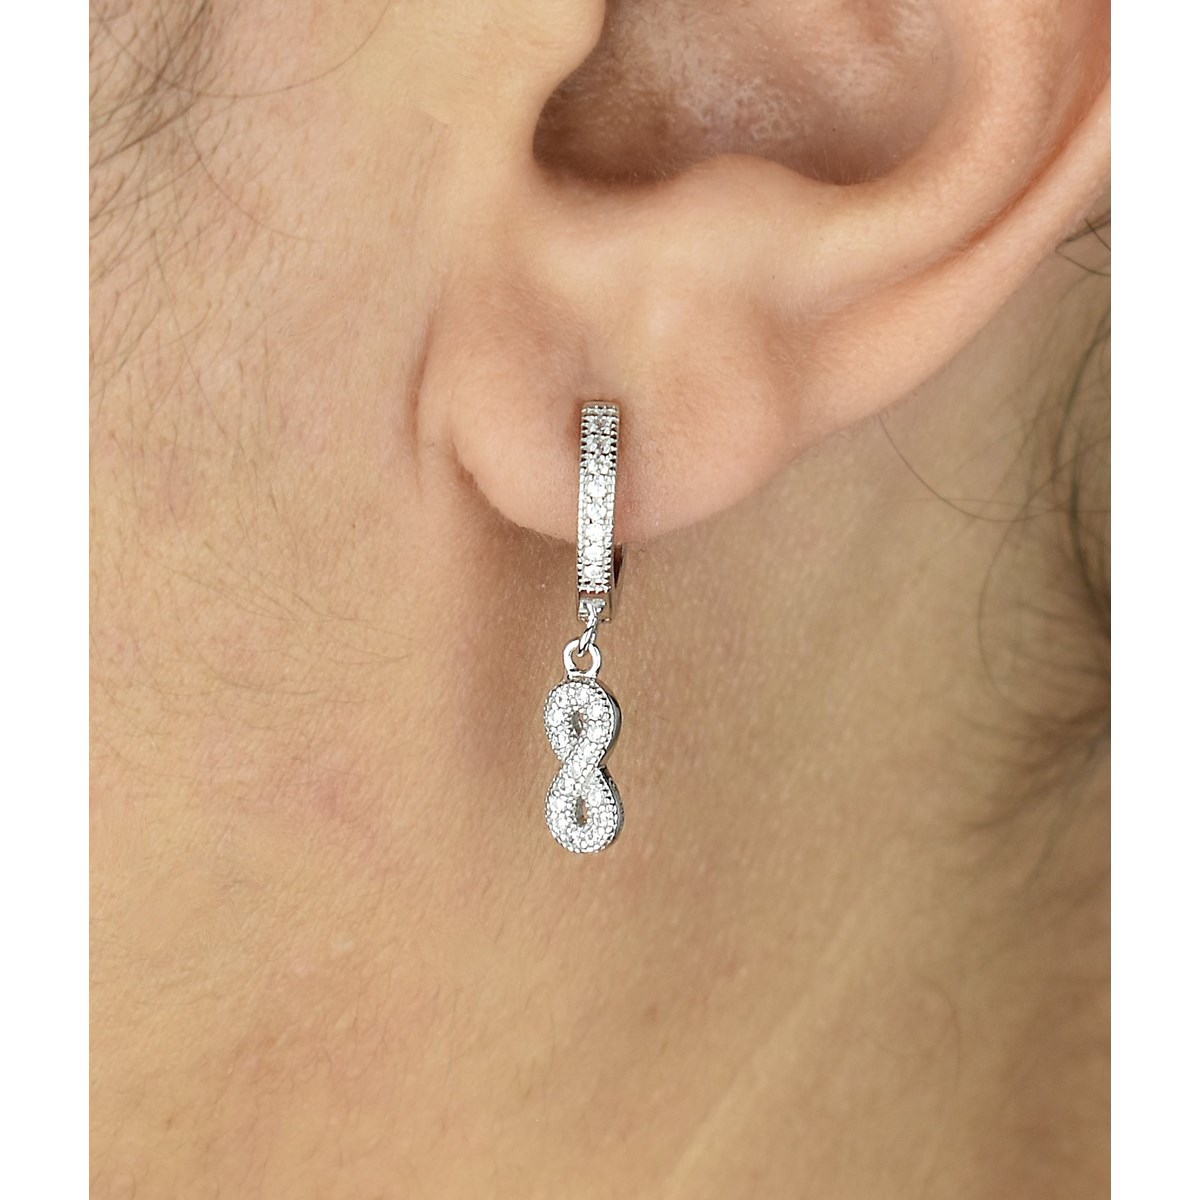 Boucles d'oreilles Mini Créoles infini oxyde de zirconium pendant Argent 925 Rhodié - vue 2